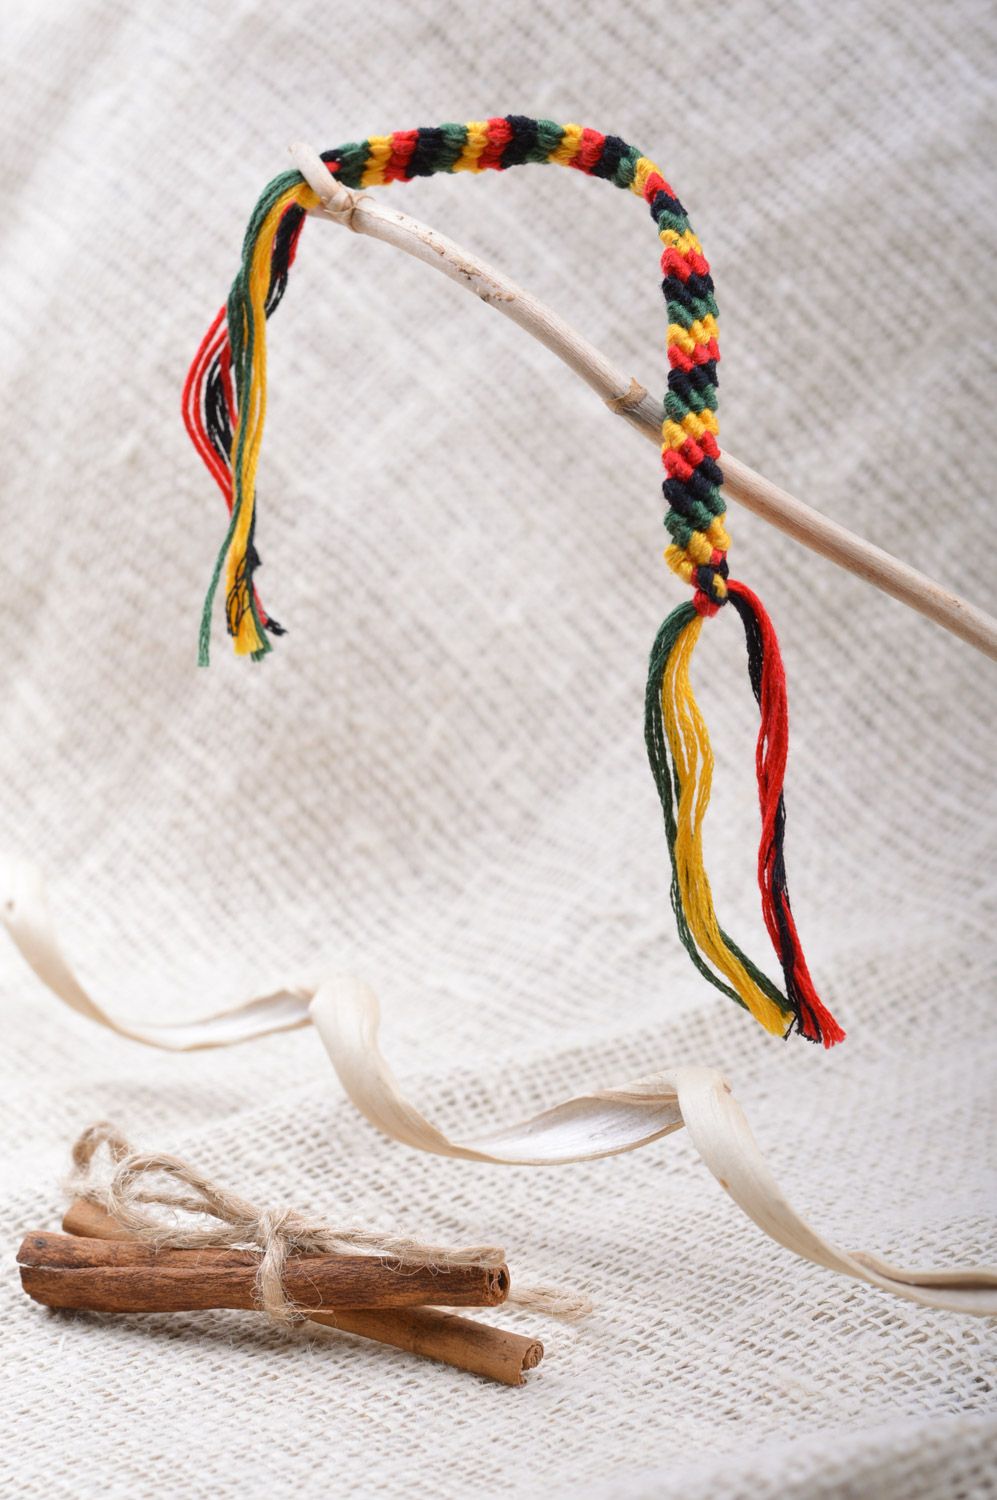 Тонкий браслет из ниток мулине фенечка на руку плетеный вручную разноцветный фото 1